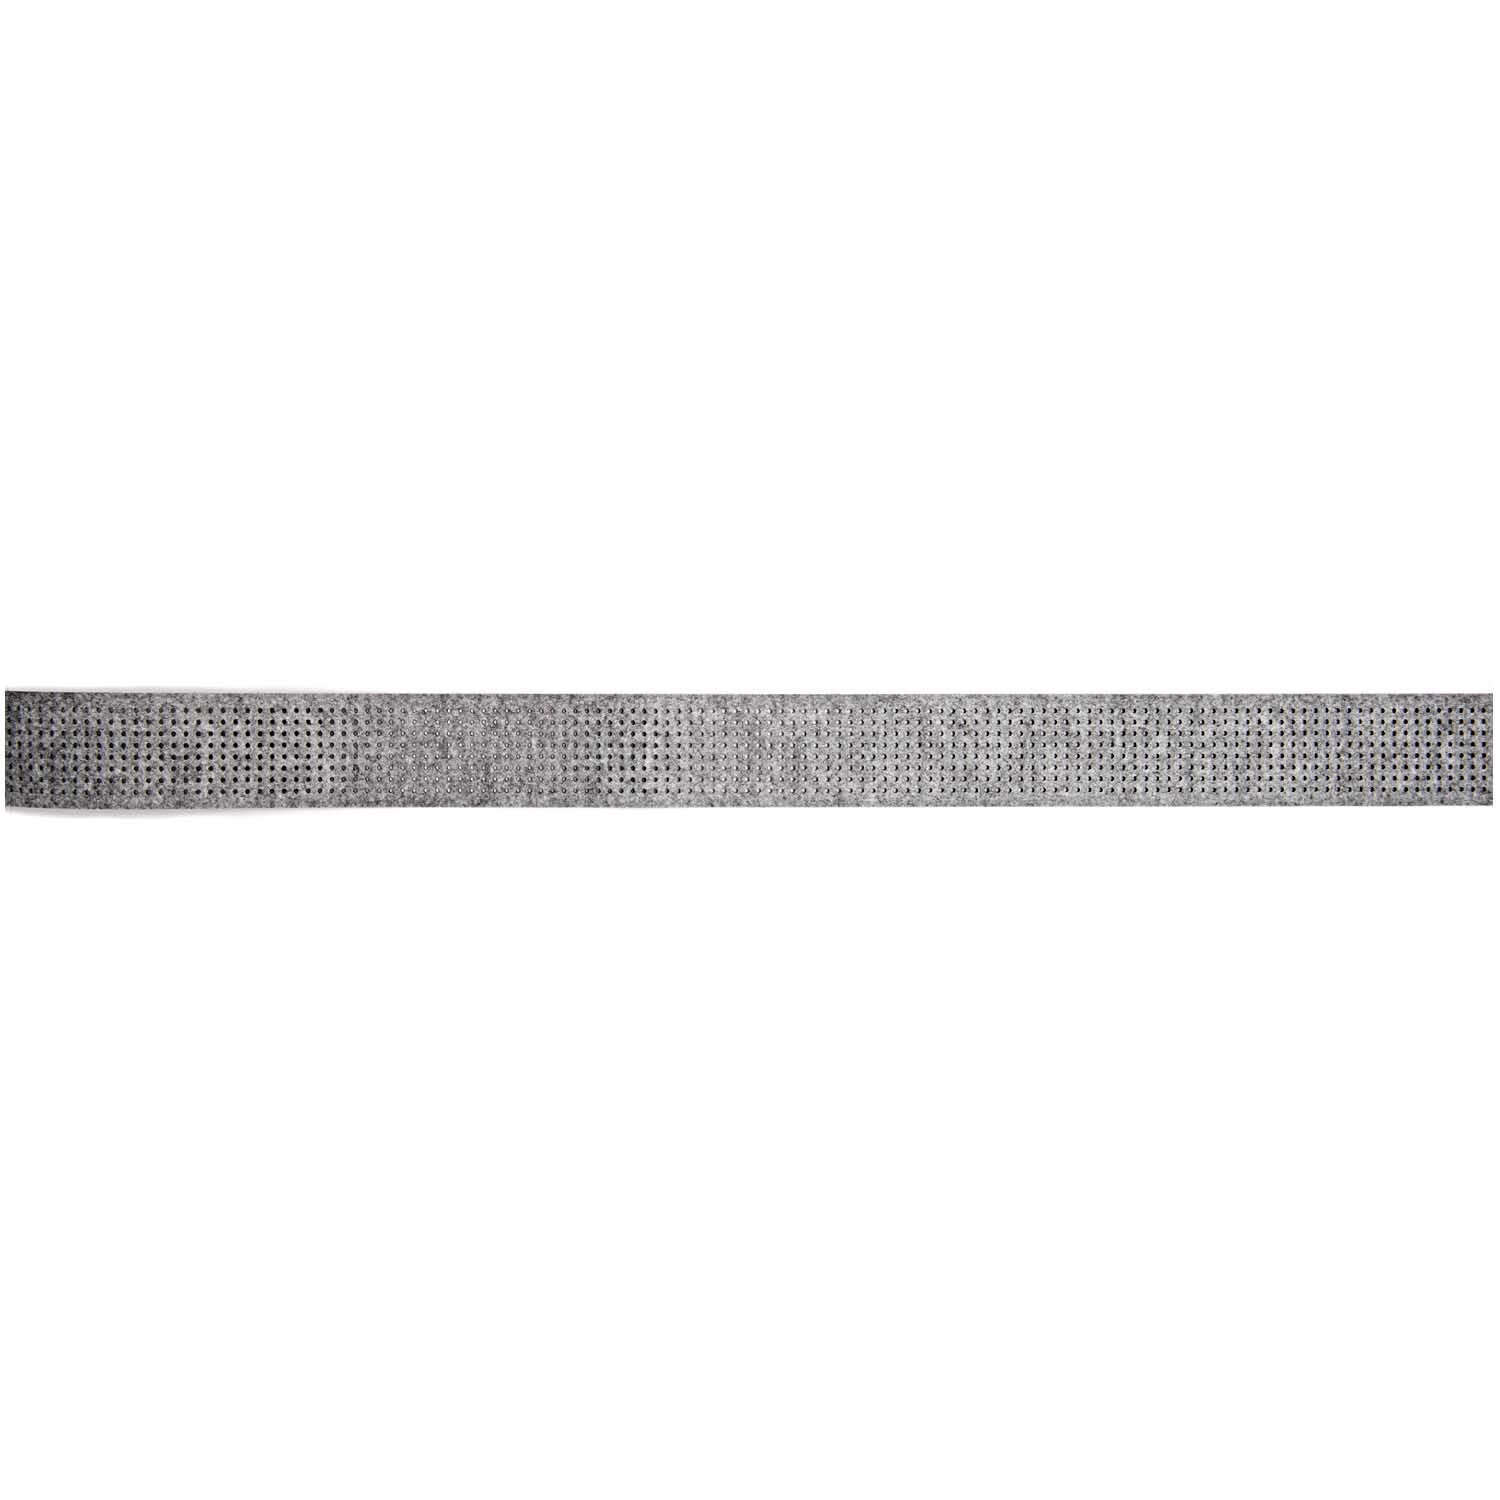 Filzband zum Besticken grau 150x6cm